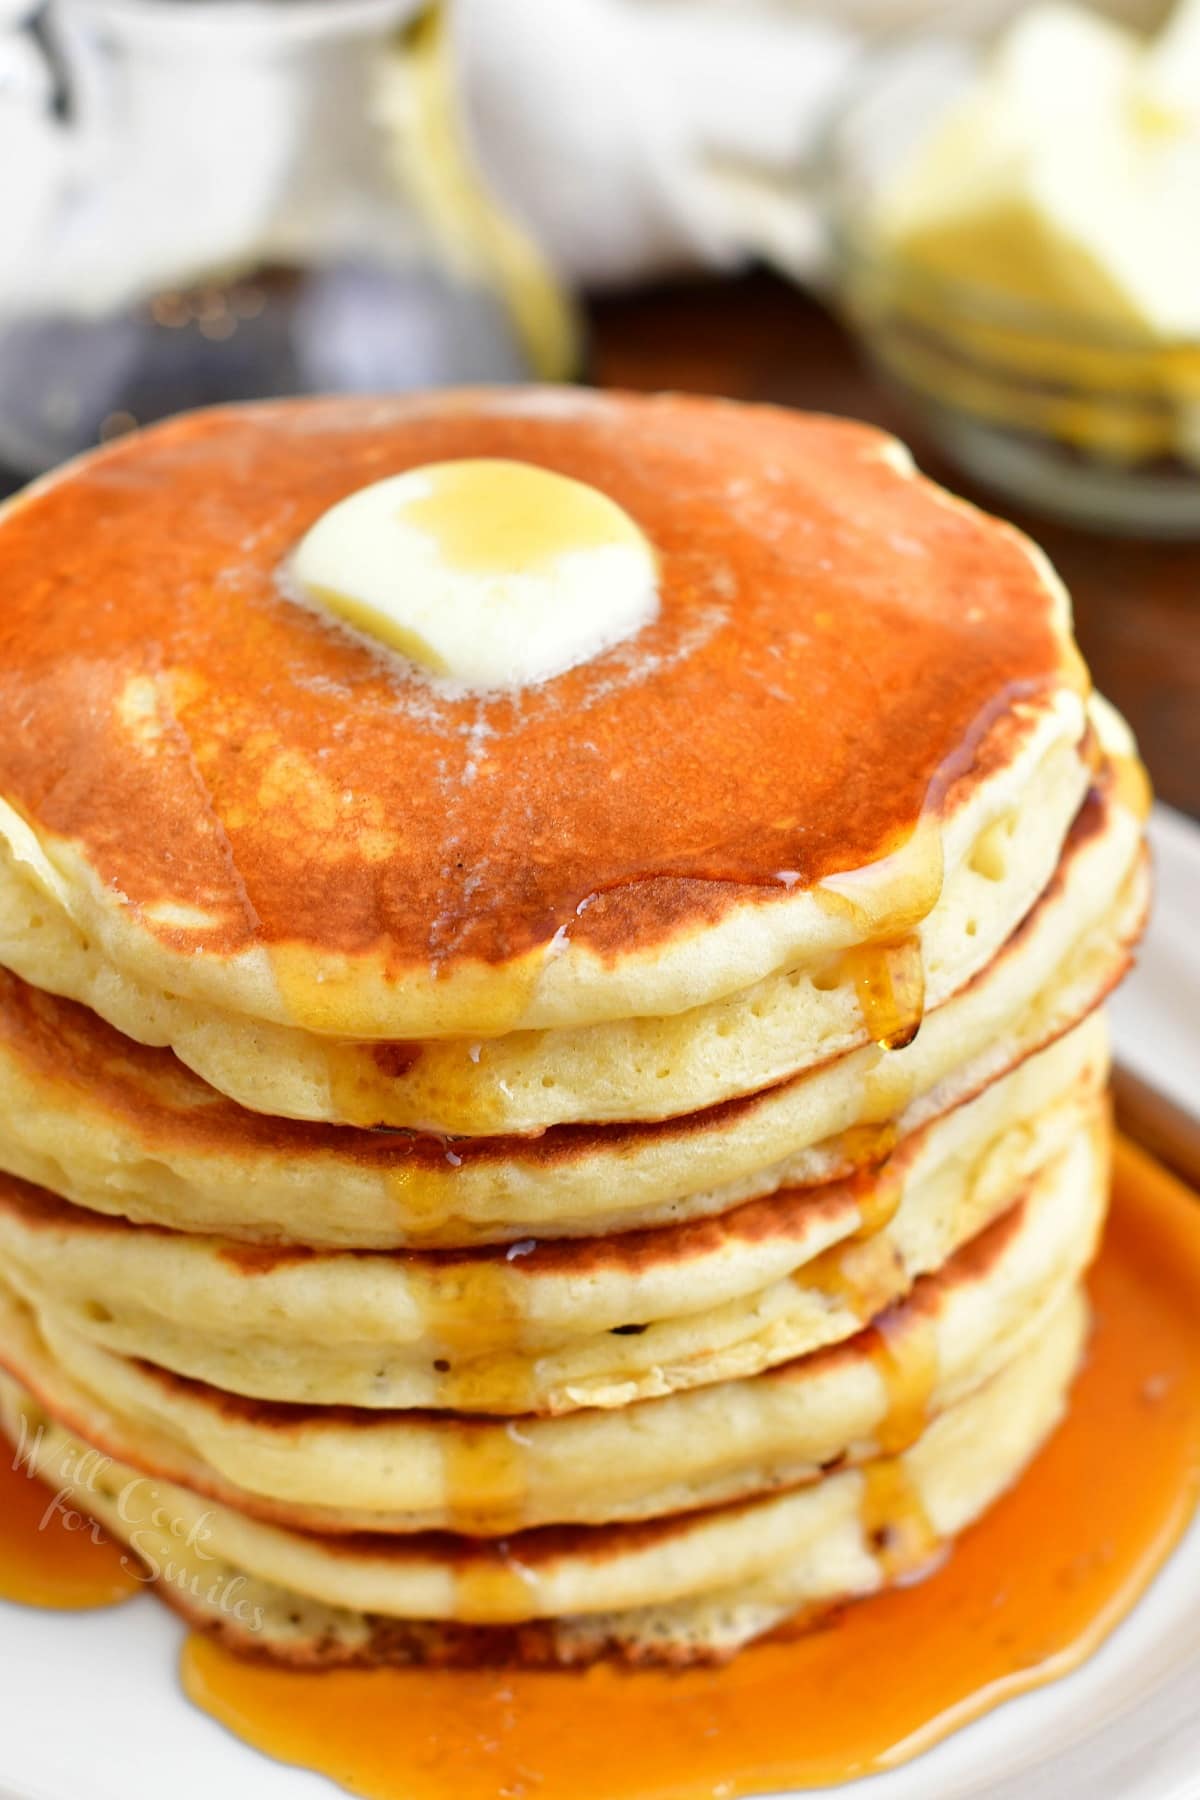 Brown Sugar Pancakes - Amanda's Easy Recipes